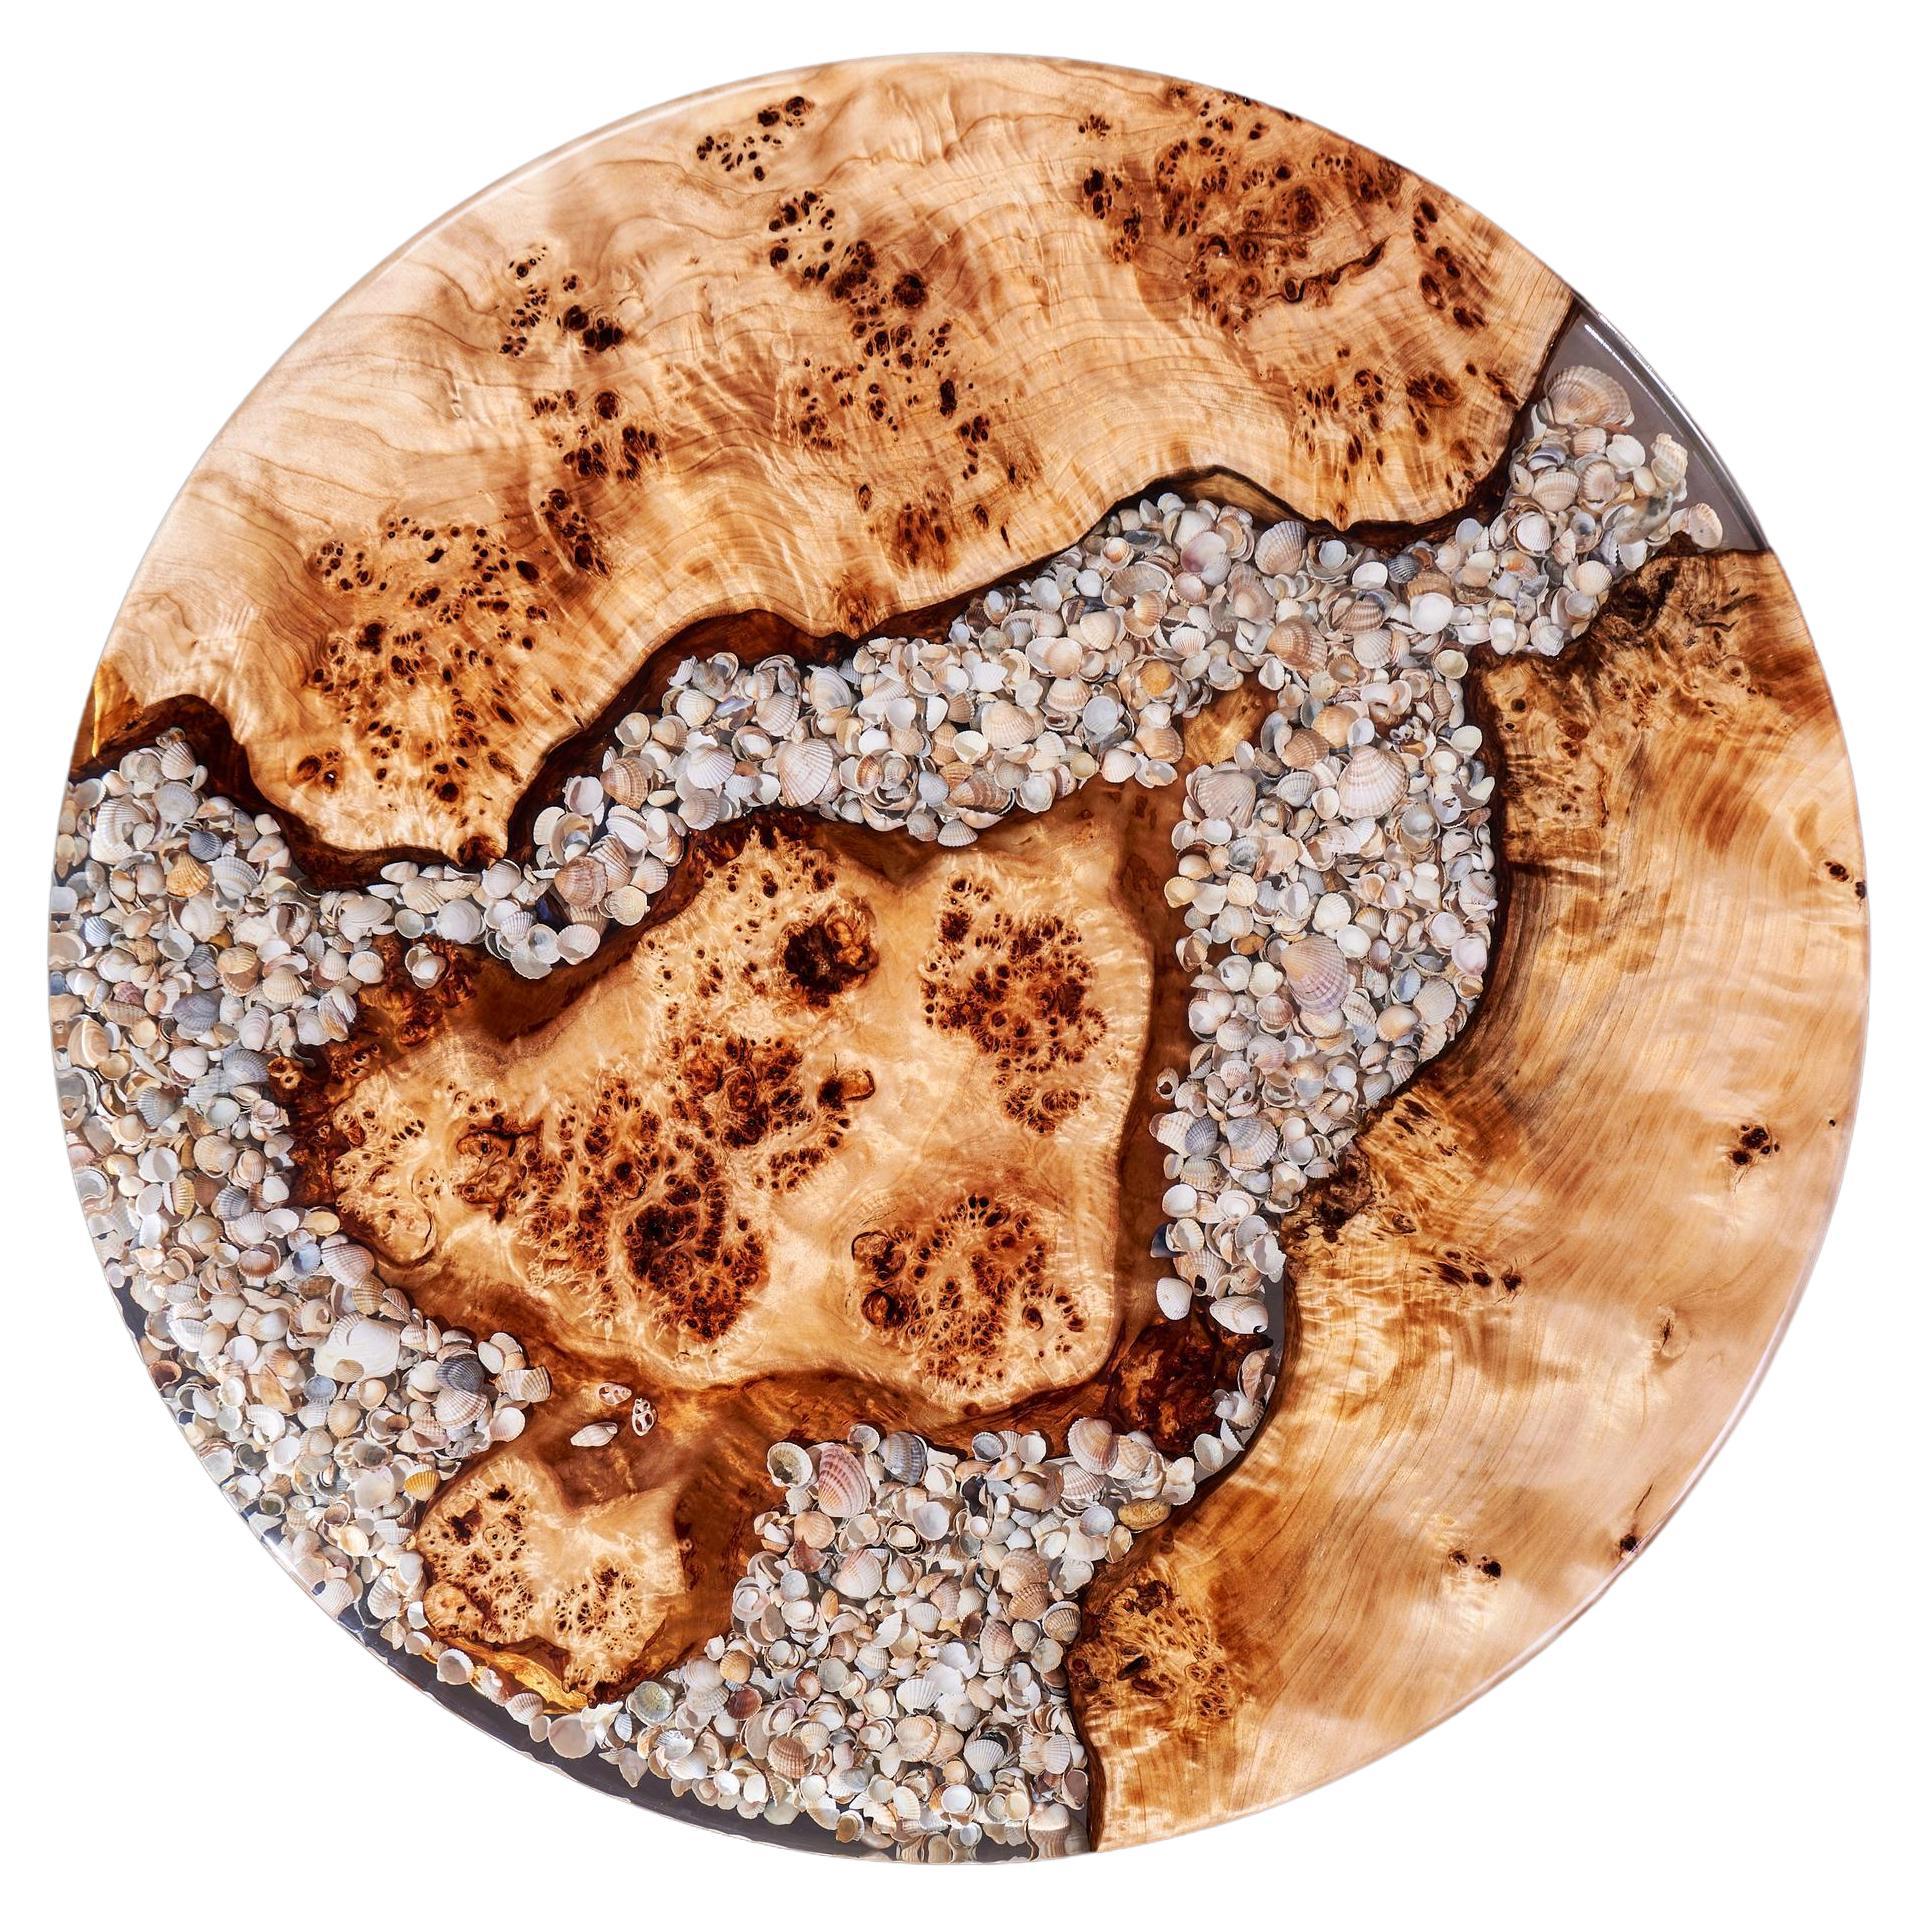 Altes Riff
Wunderschöne Platten einer alten Maserung. Unglaubliche Textur und authentisches Muster, das sich seit Jahrzehnten gebildet hat. Und es gab uns die Möglichkeit, ihn zu verewigen, nachdem der Baum vollständig getrocknet war. Er wird die